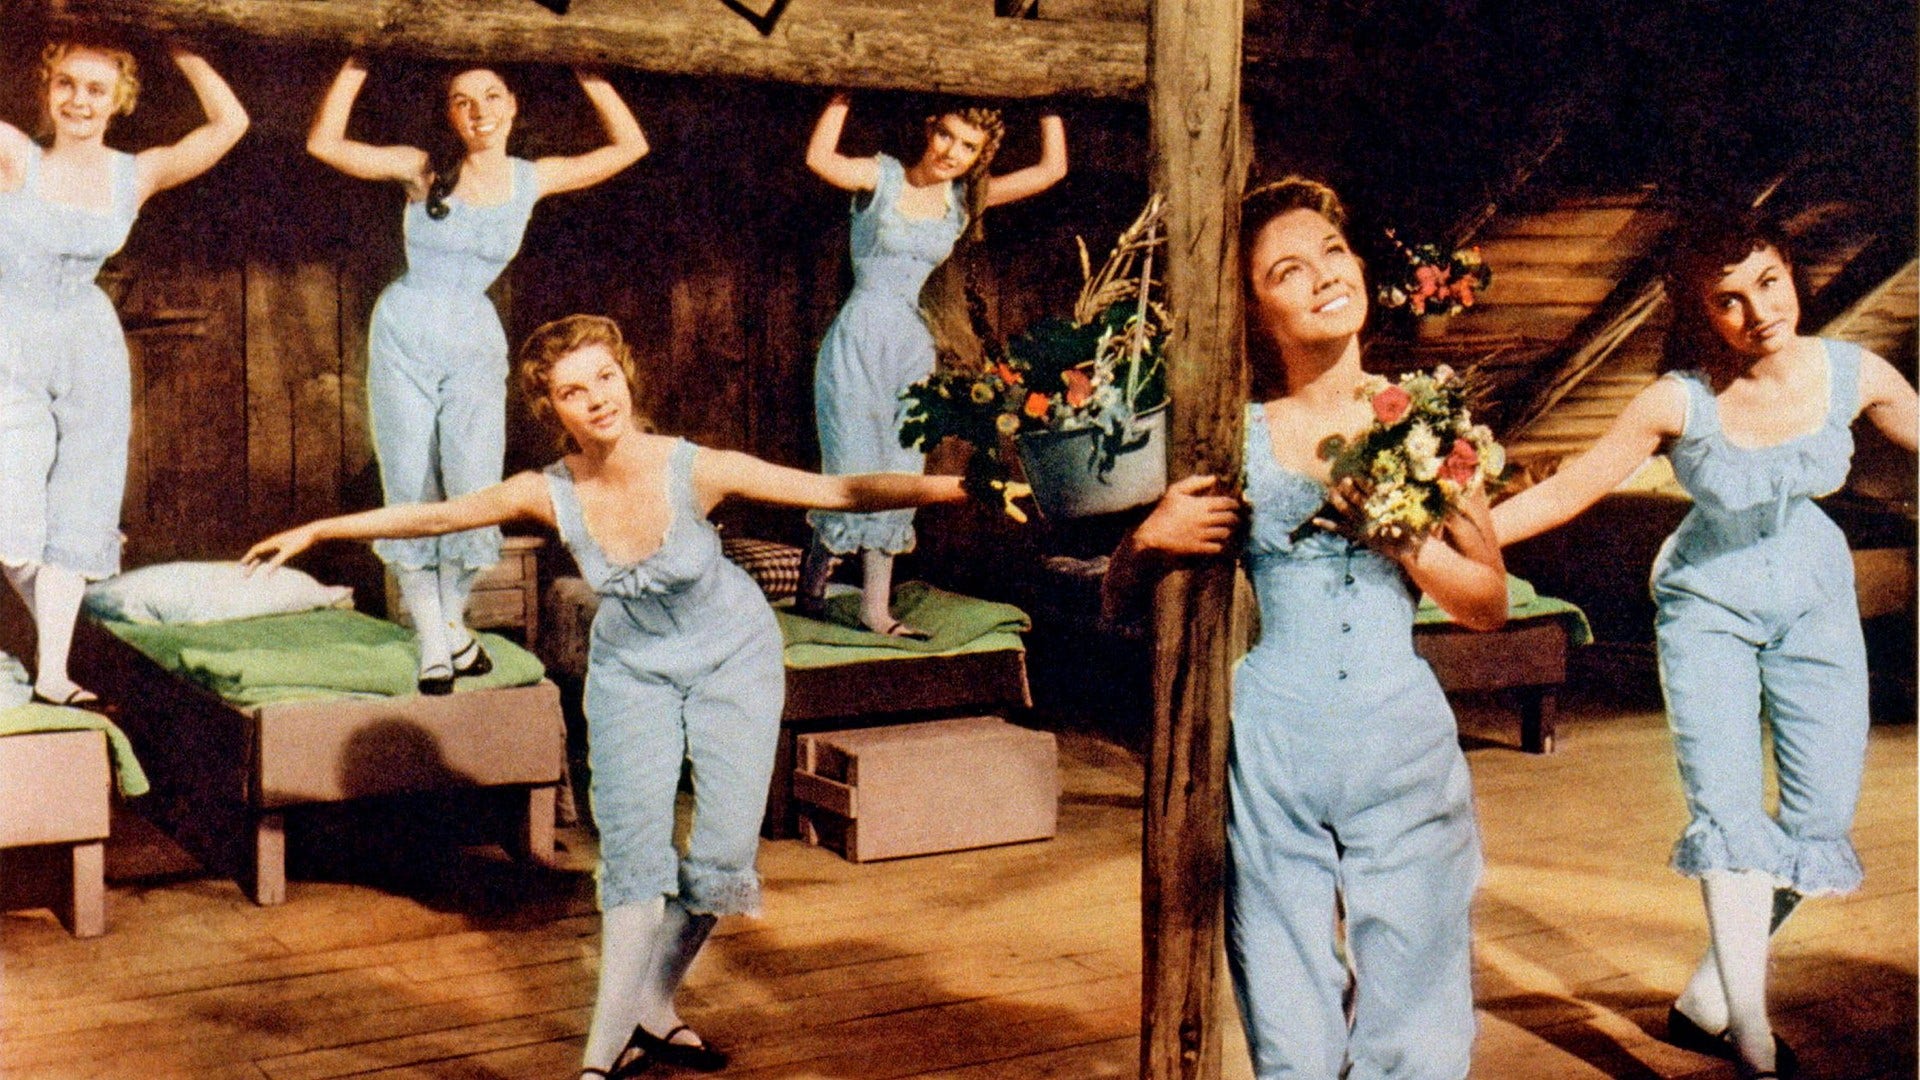 Sex av de sju brudarna i filmen från 1954.